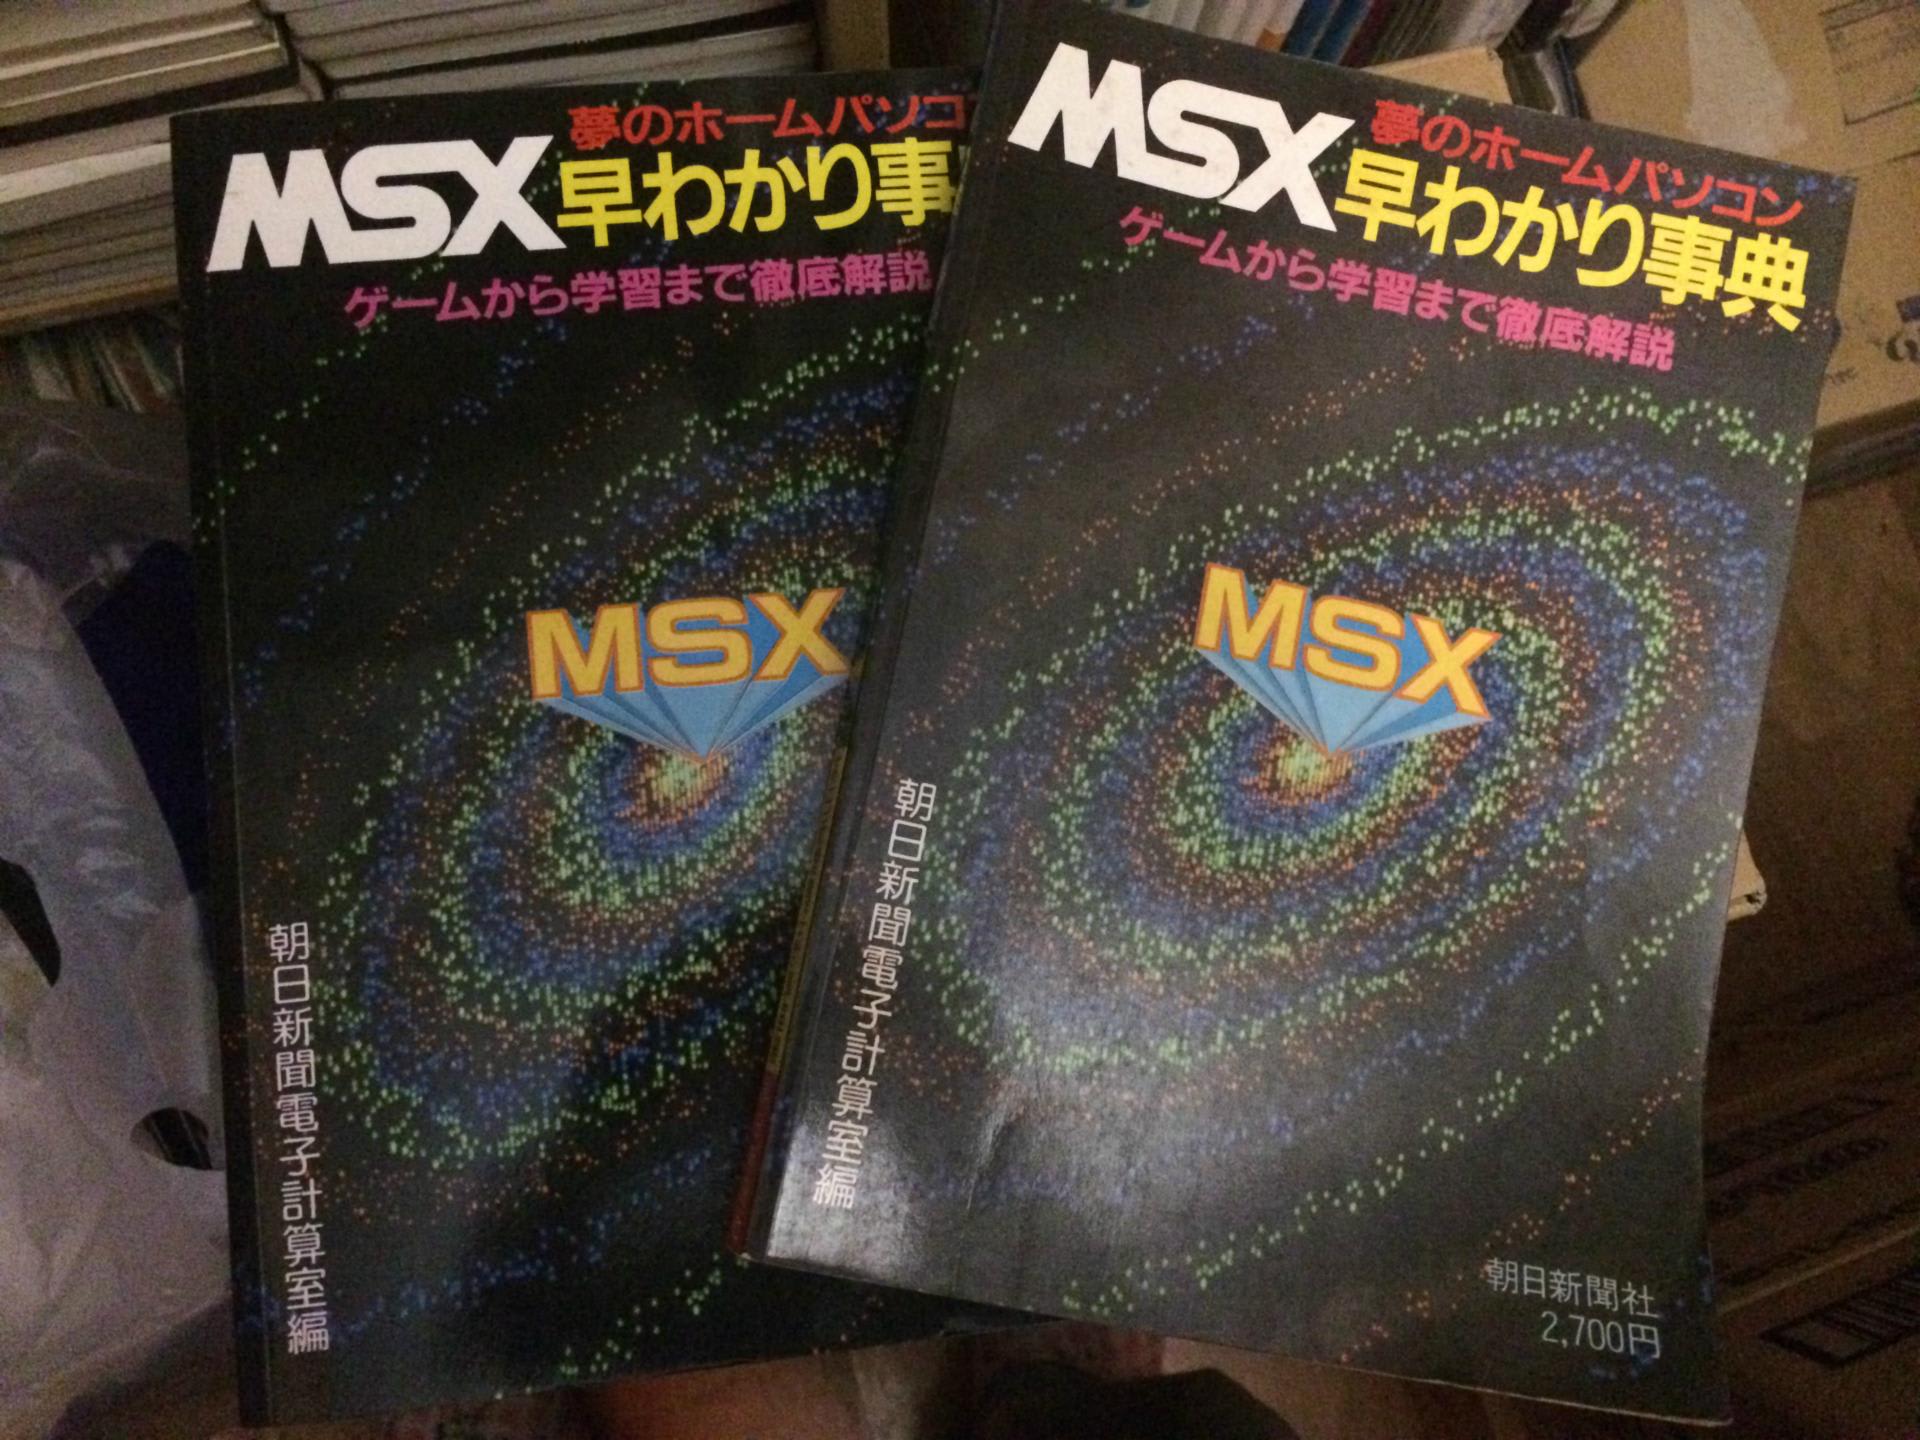 朝日新聞社の「MSX本」はレベル高め。 - プレミアムMSX